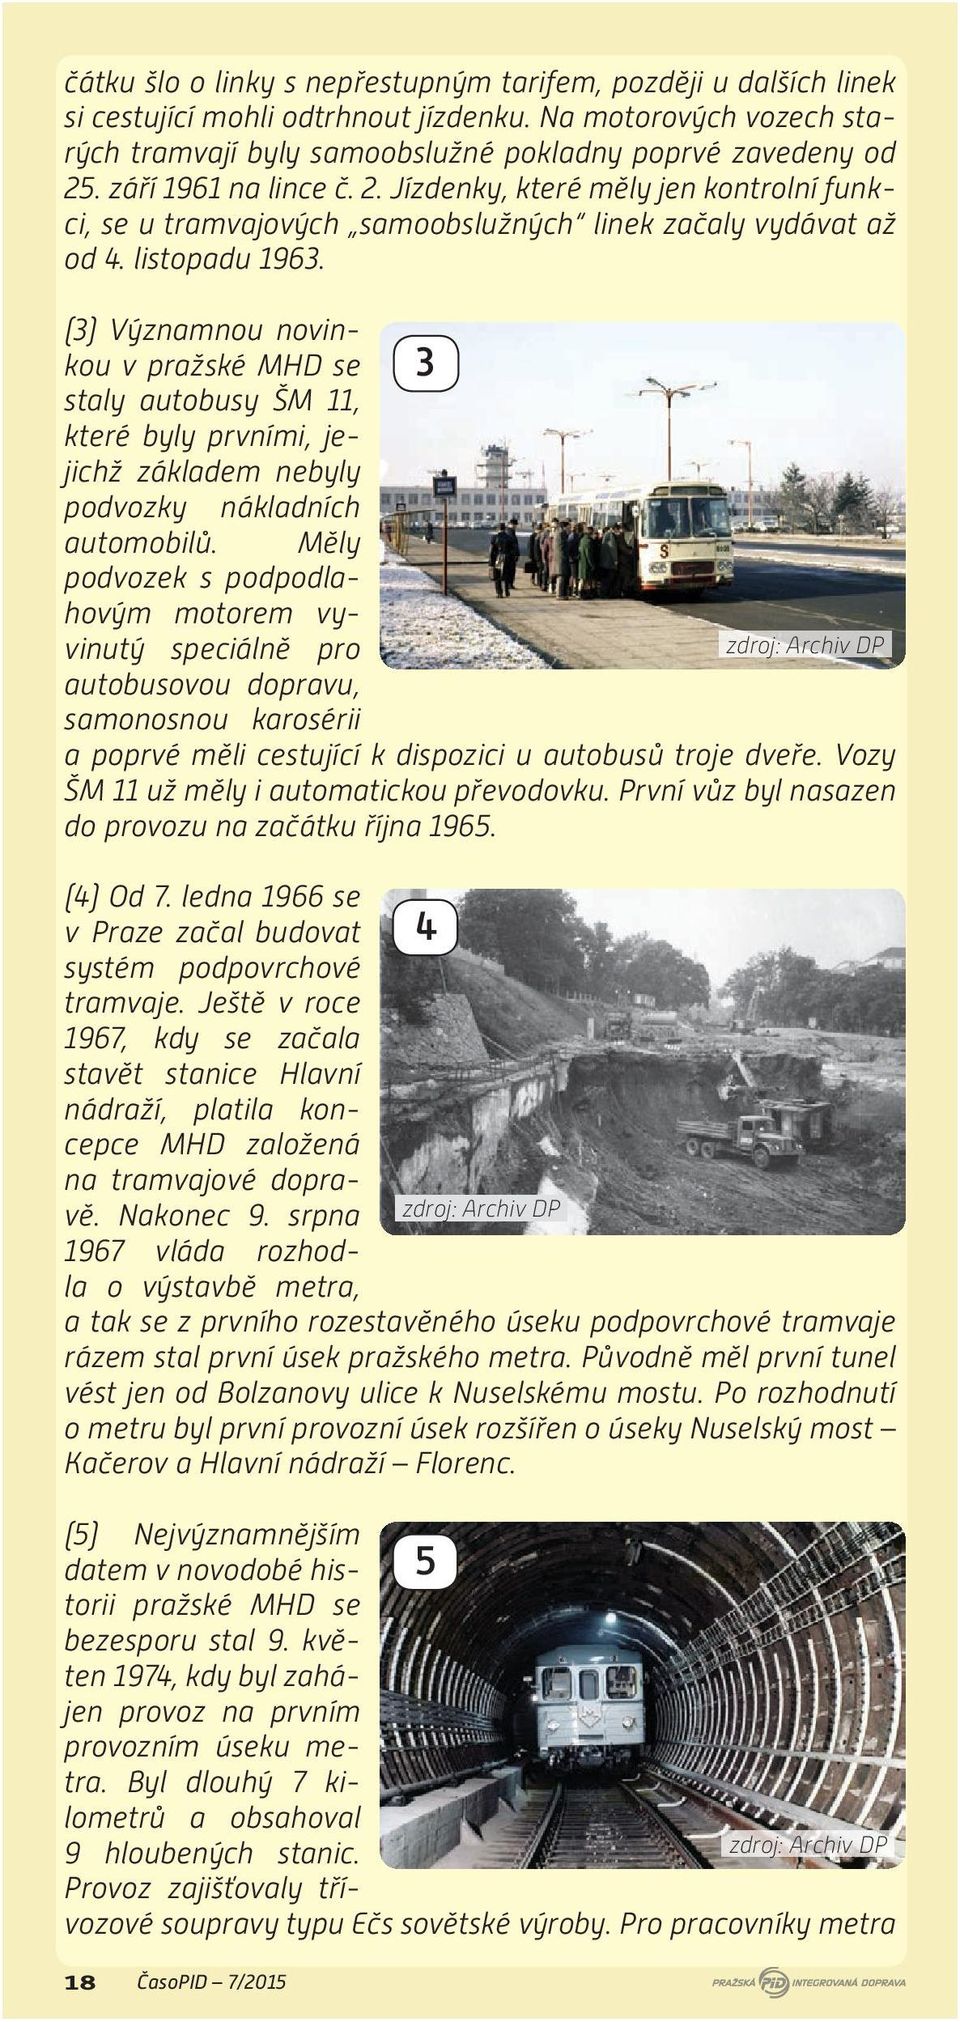 (3) Významnou novinkou v pražské MHD se staly autobusy ŠM 11, které byly prvními, jejichž základem nebyly podvozky nákladních automobilů.